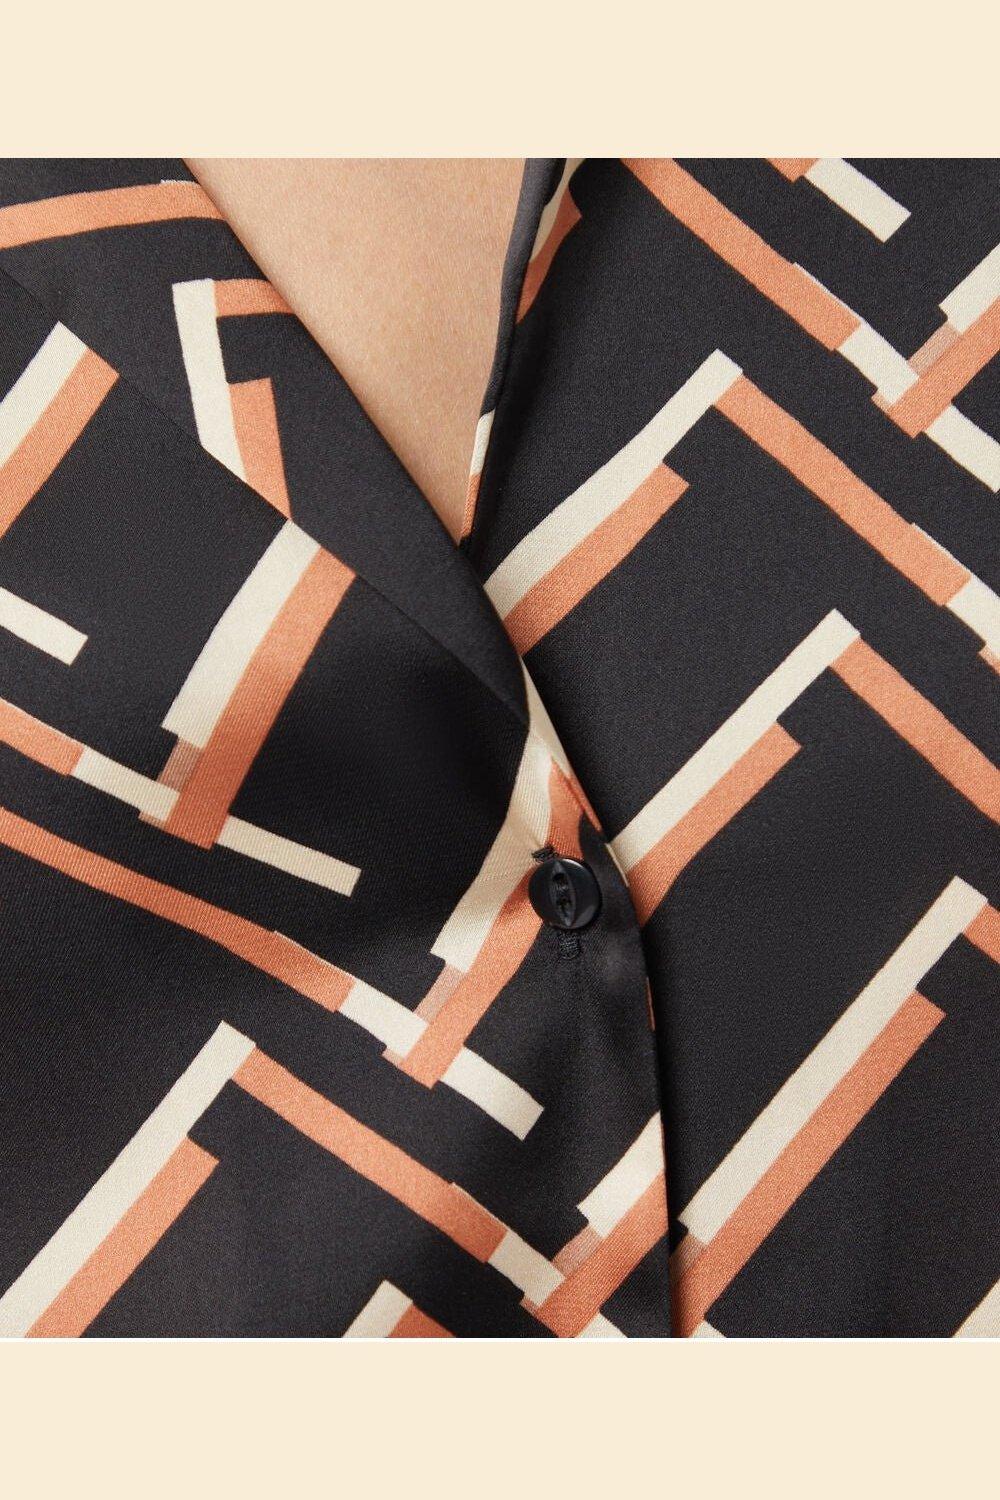 ETAM - חולצת פיג'מה סאטן JENET שחורה - MASHBIR//365